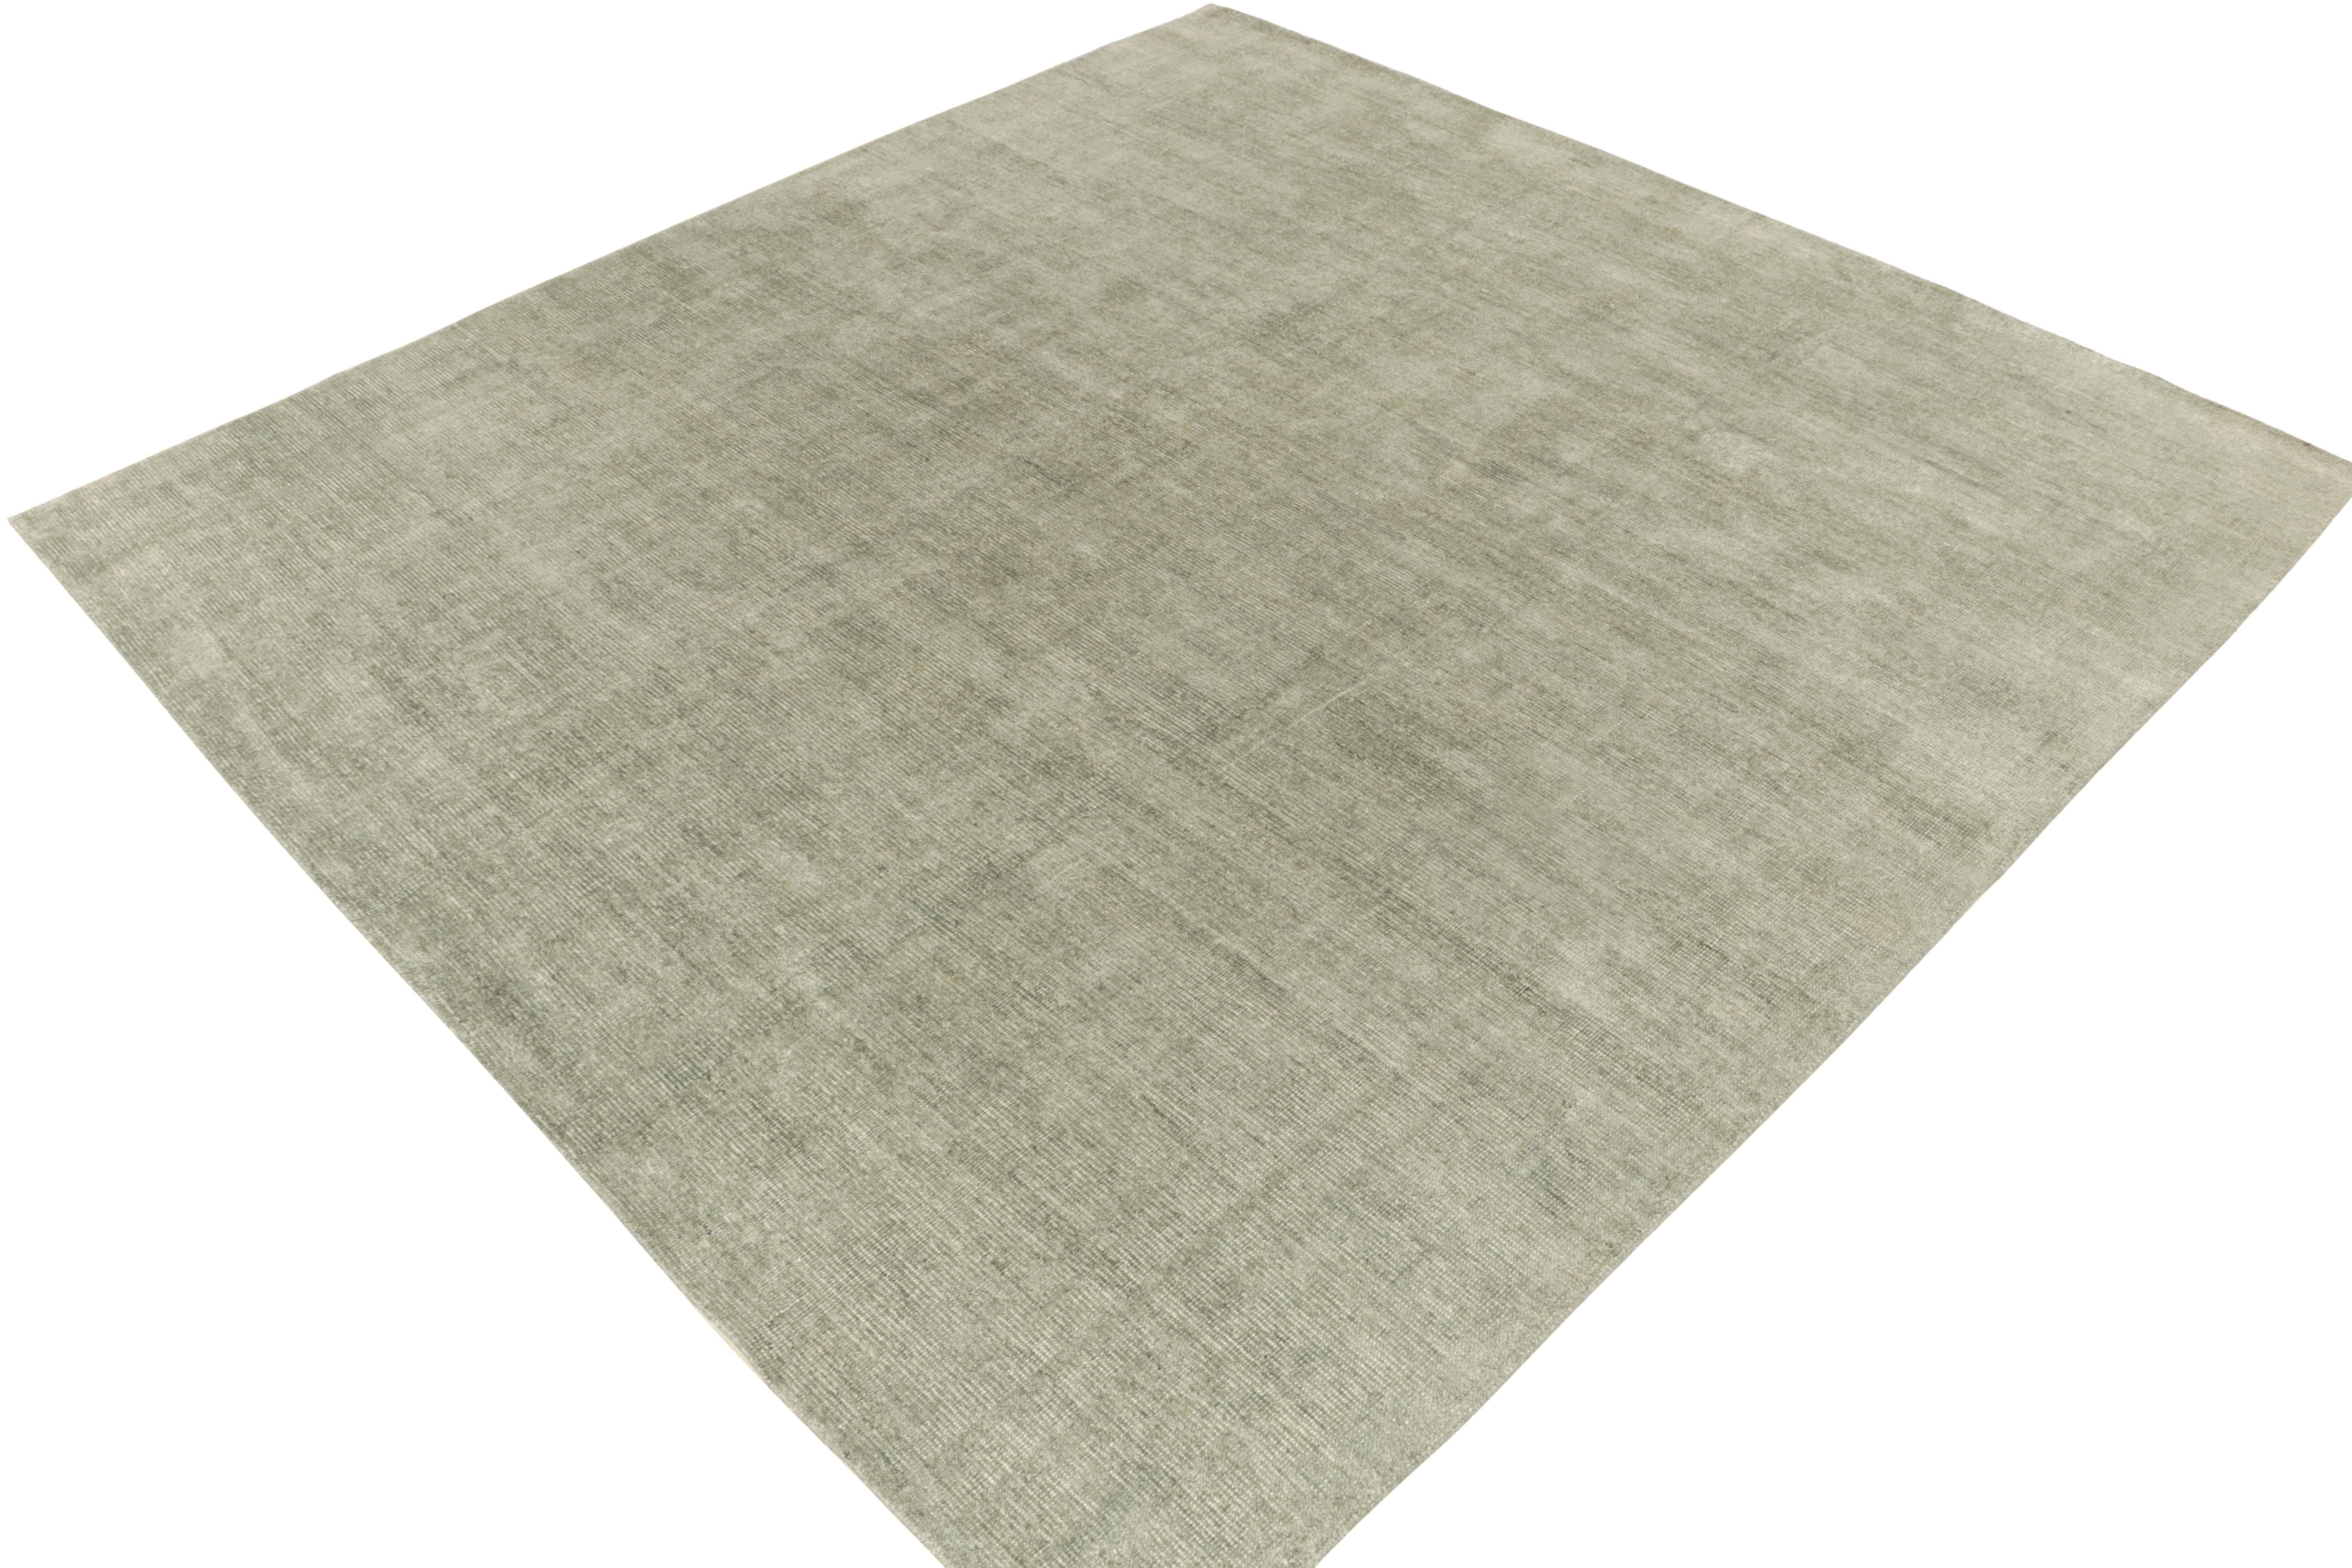 Un tapis 11x12 de la collection contemporaine Texture of Color de Rug & Kilim. Ce tapis a une personnalité séduisante, avec des nuances de gris clair et des tons de vert pâle, pour un jeu de couleurs délicieux. Noué à la main en soie avec un mélange